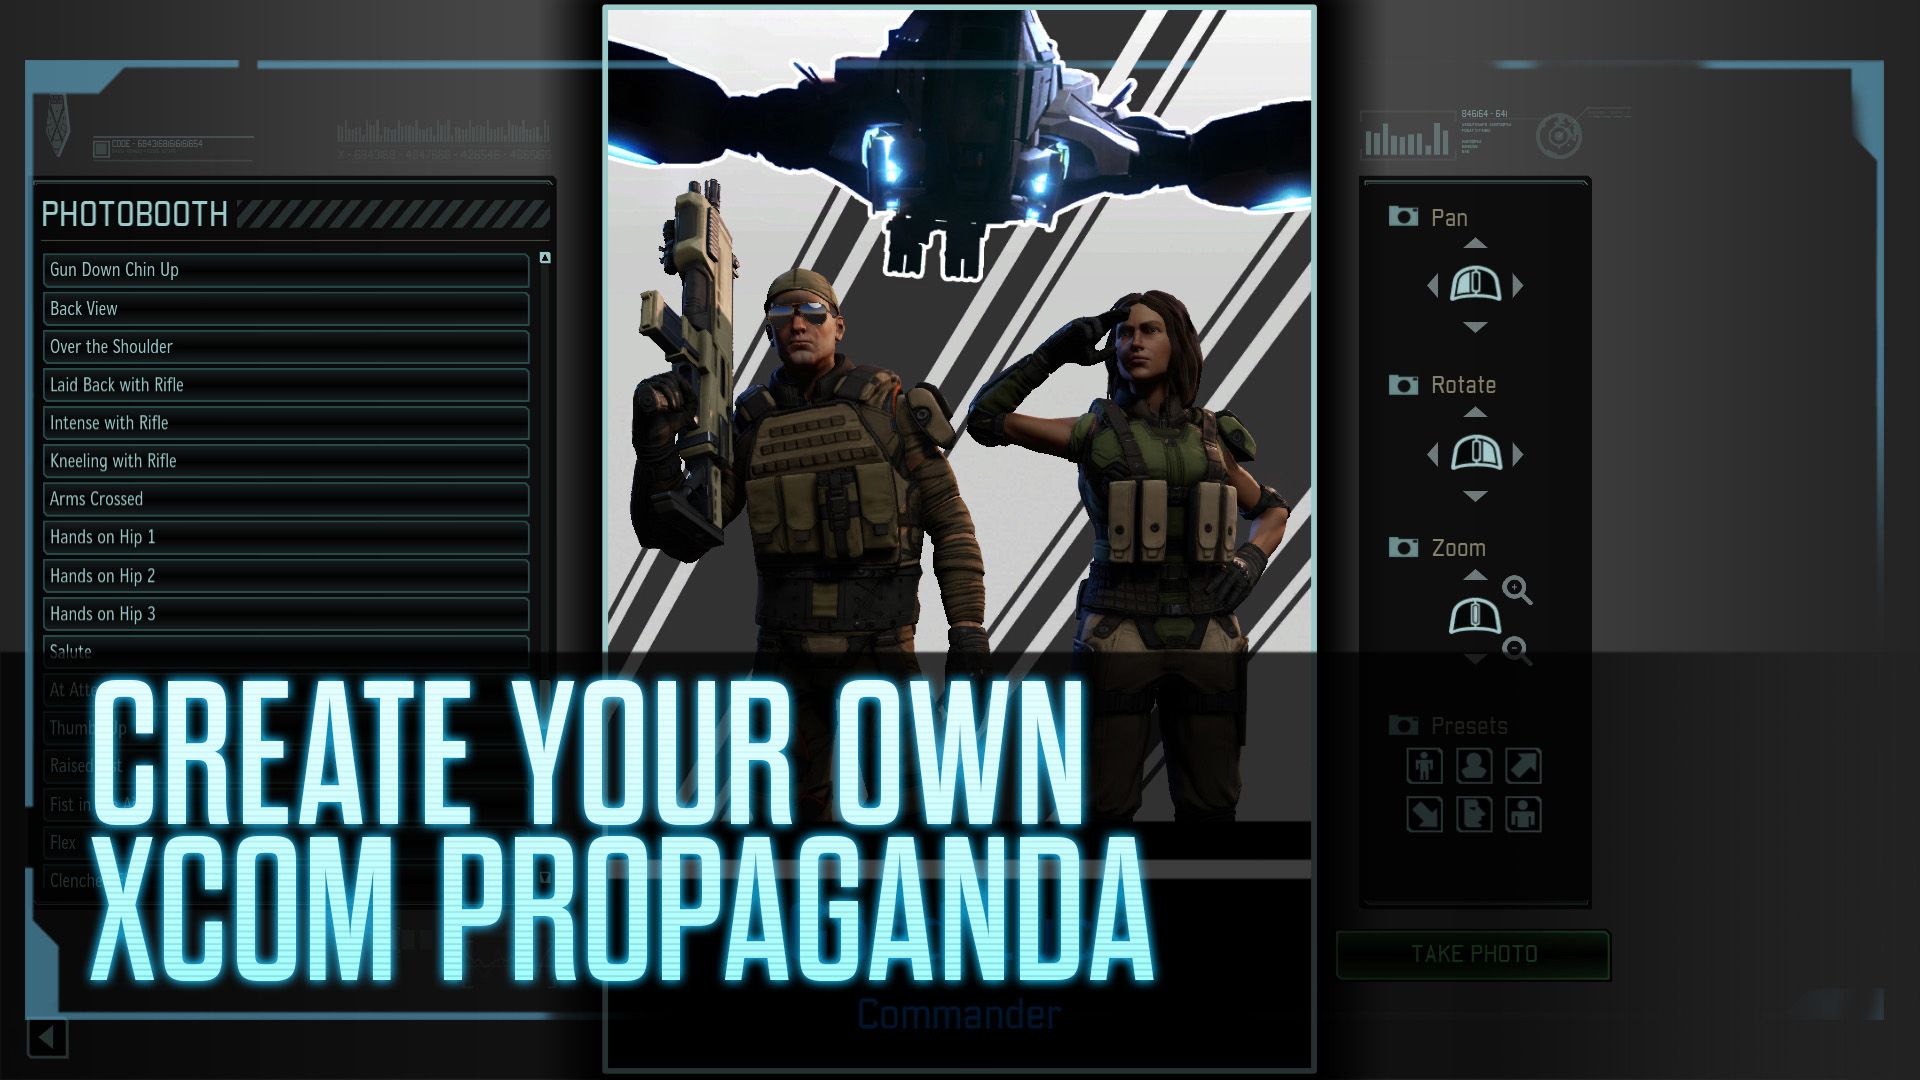 Propaganda.jpg